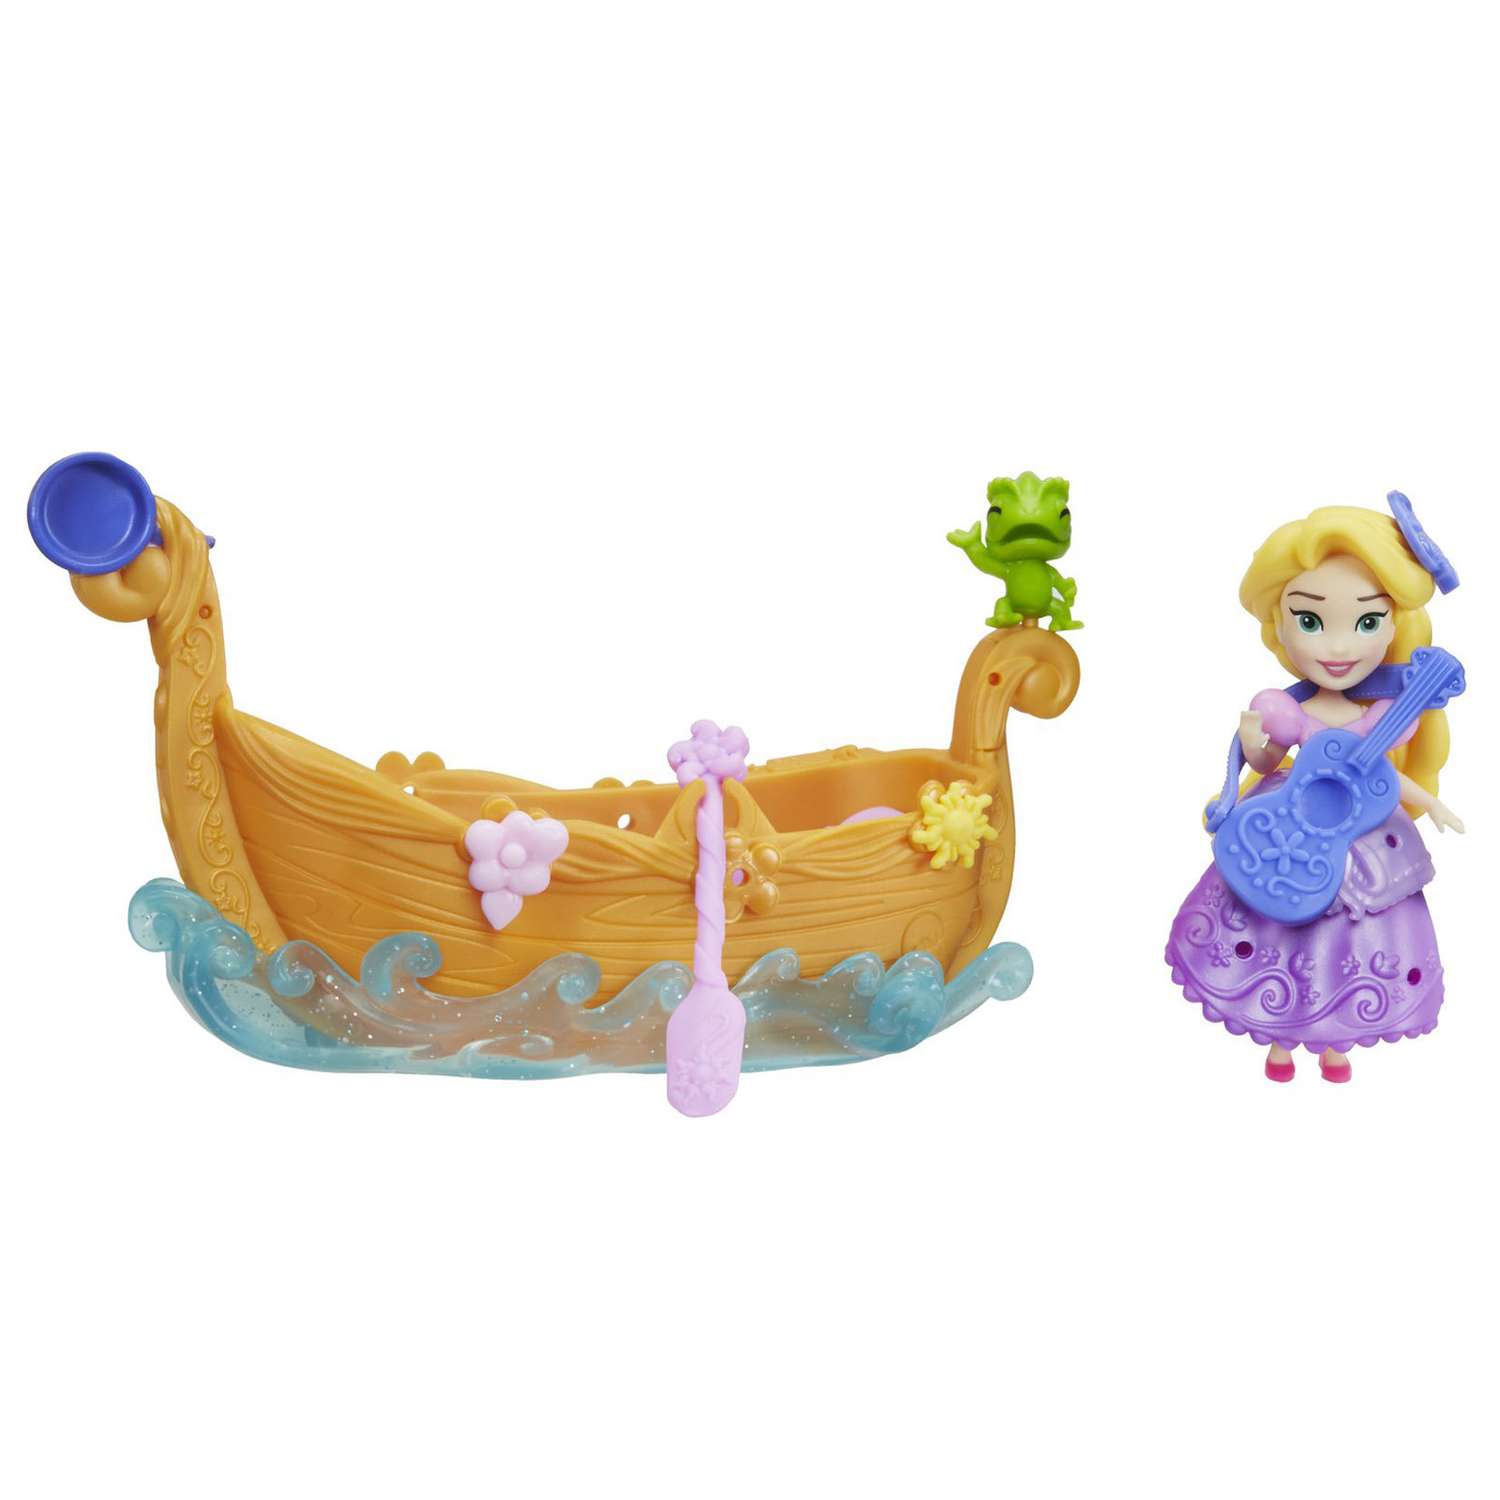 Набор Princess Disney Фигурка и лодка в ассортименте E0068EU4 E0068EU4 - фото 7